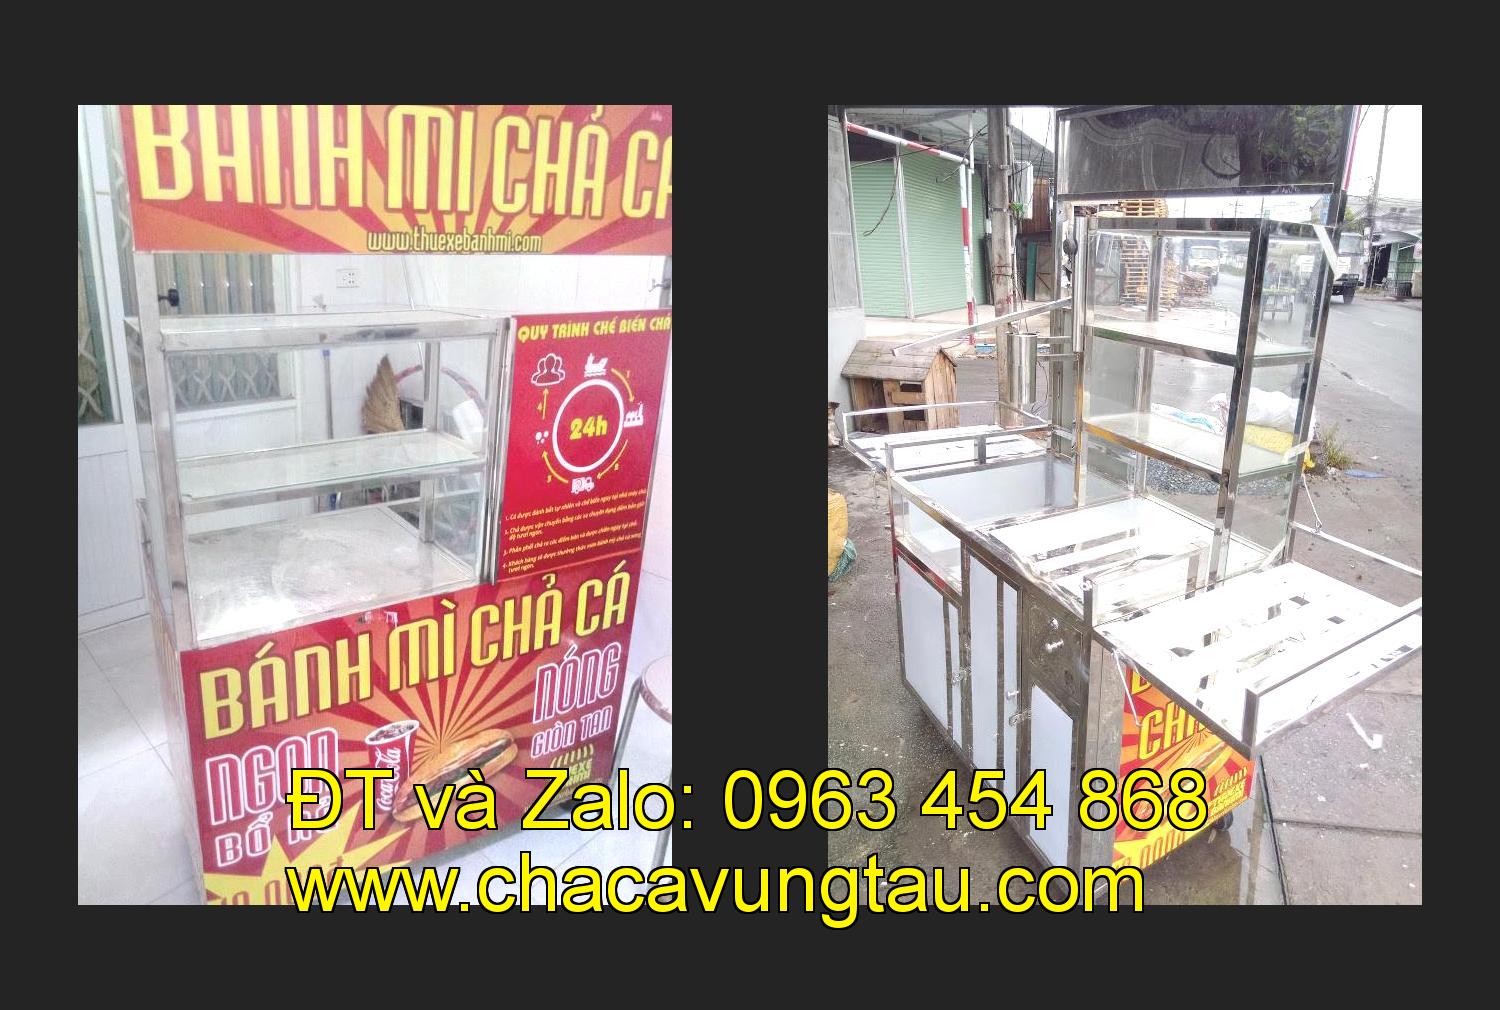 Bán xe bánh mì chả cá tại tỉnh Ninh Thuận